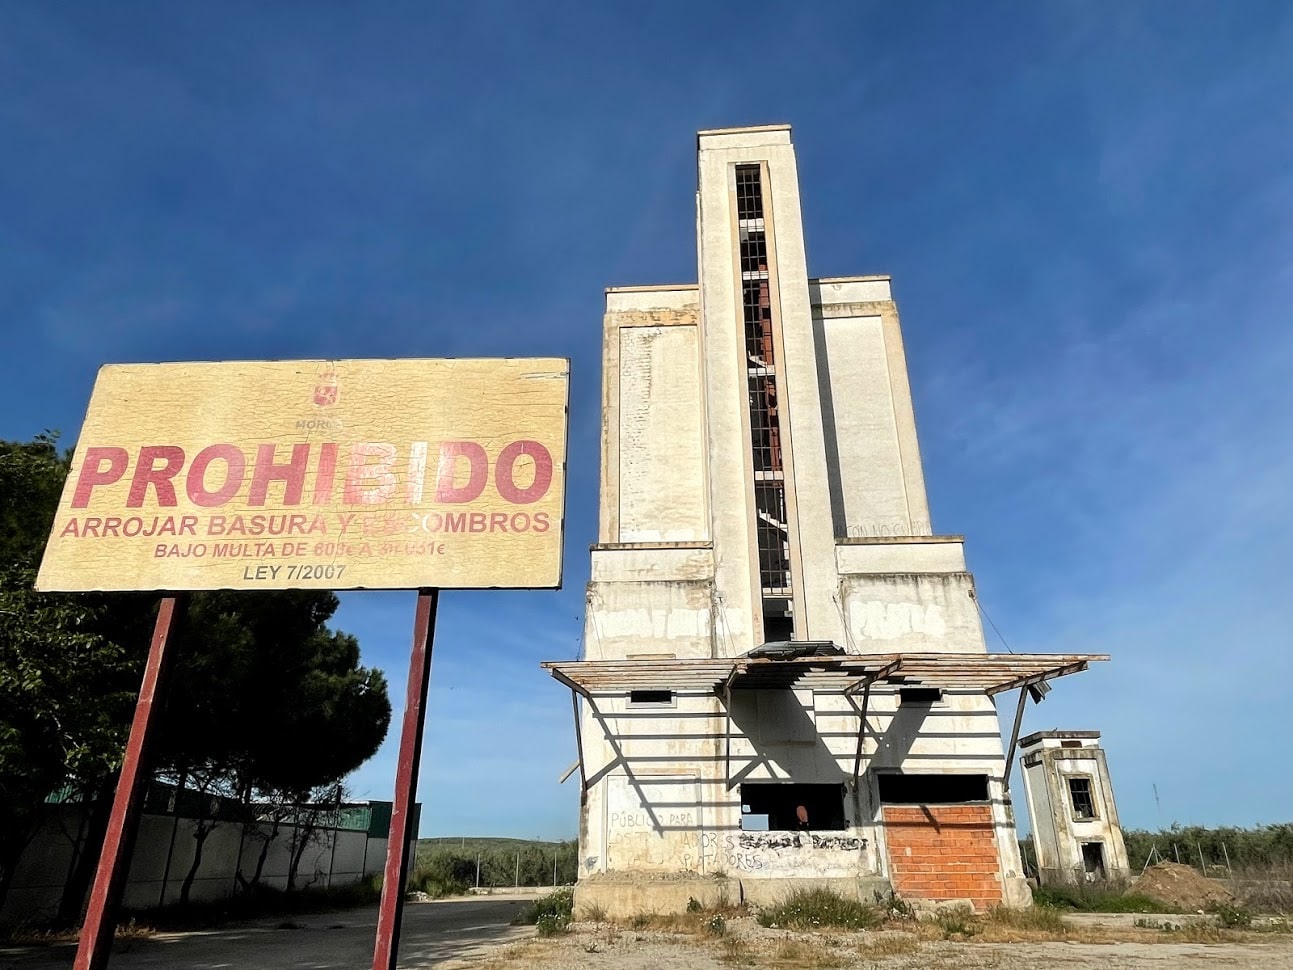 Los silos, catedrales olvidadas que reclaman los ayuntamientos para nuevos proyectos